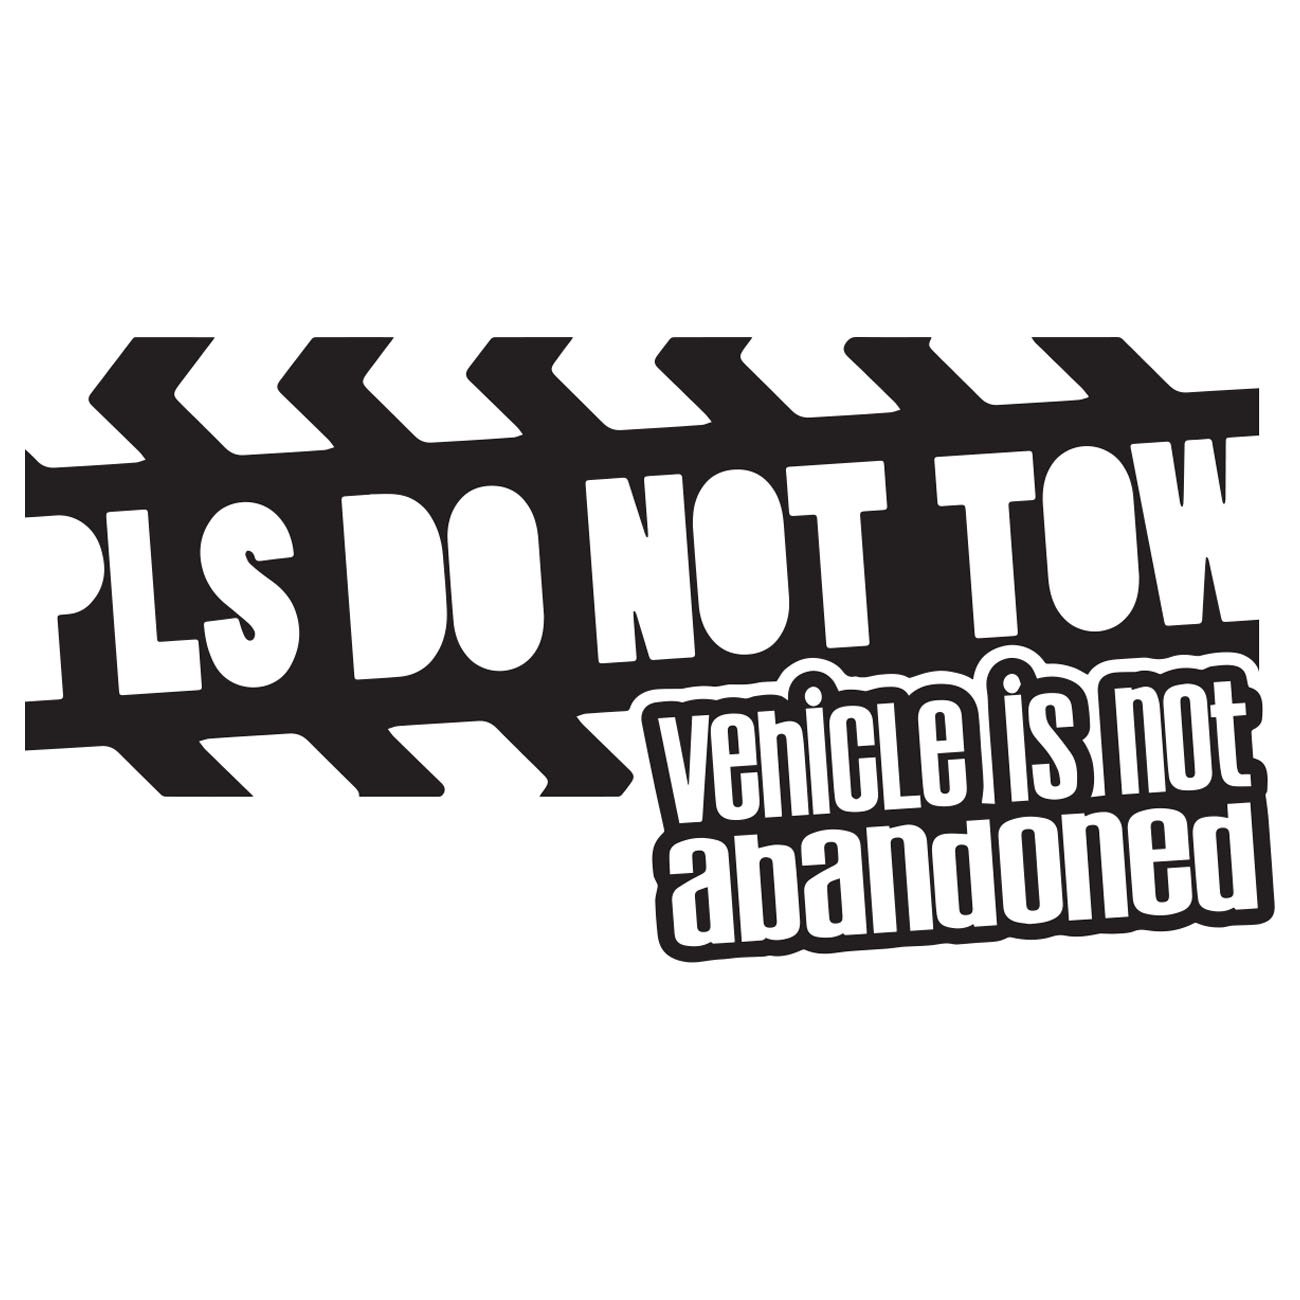 Pls do not tow